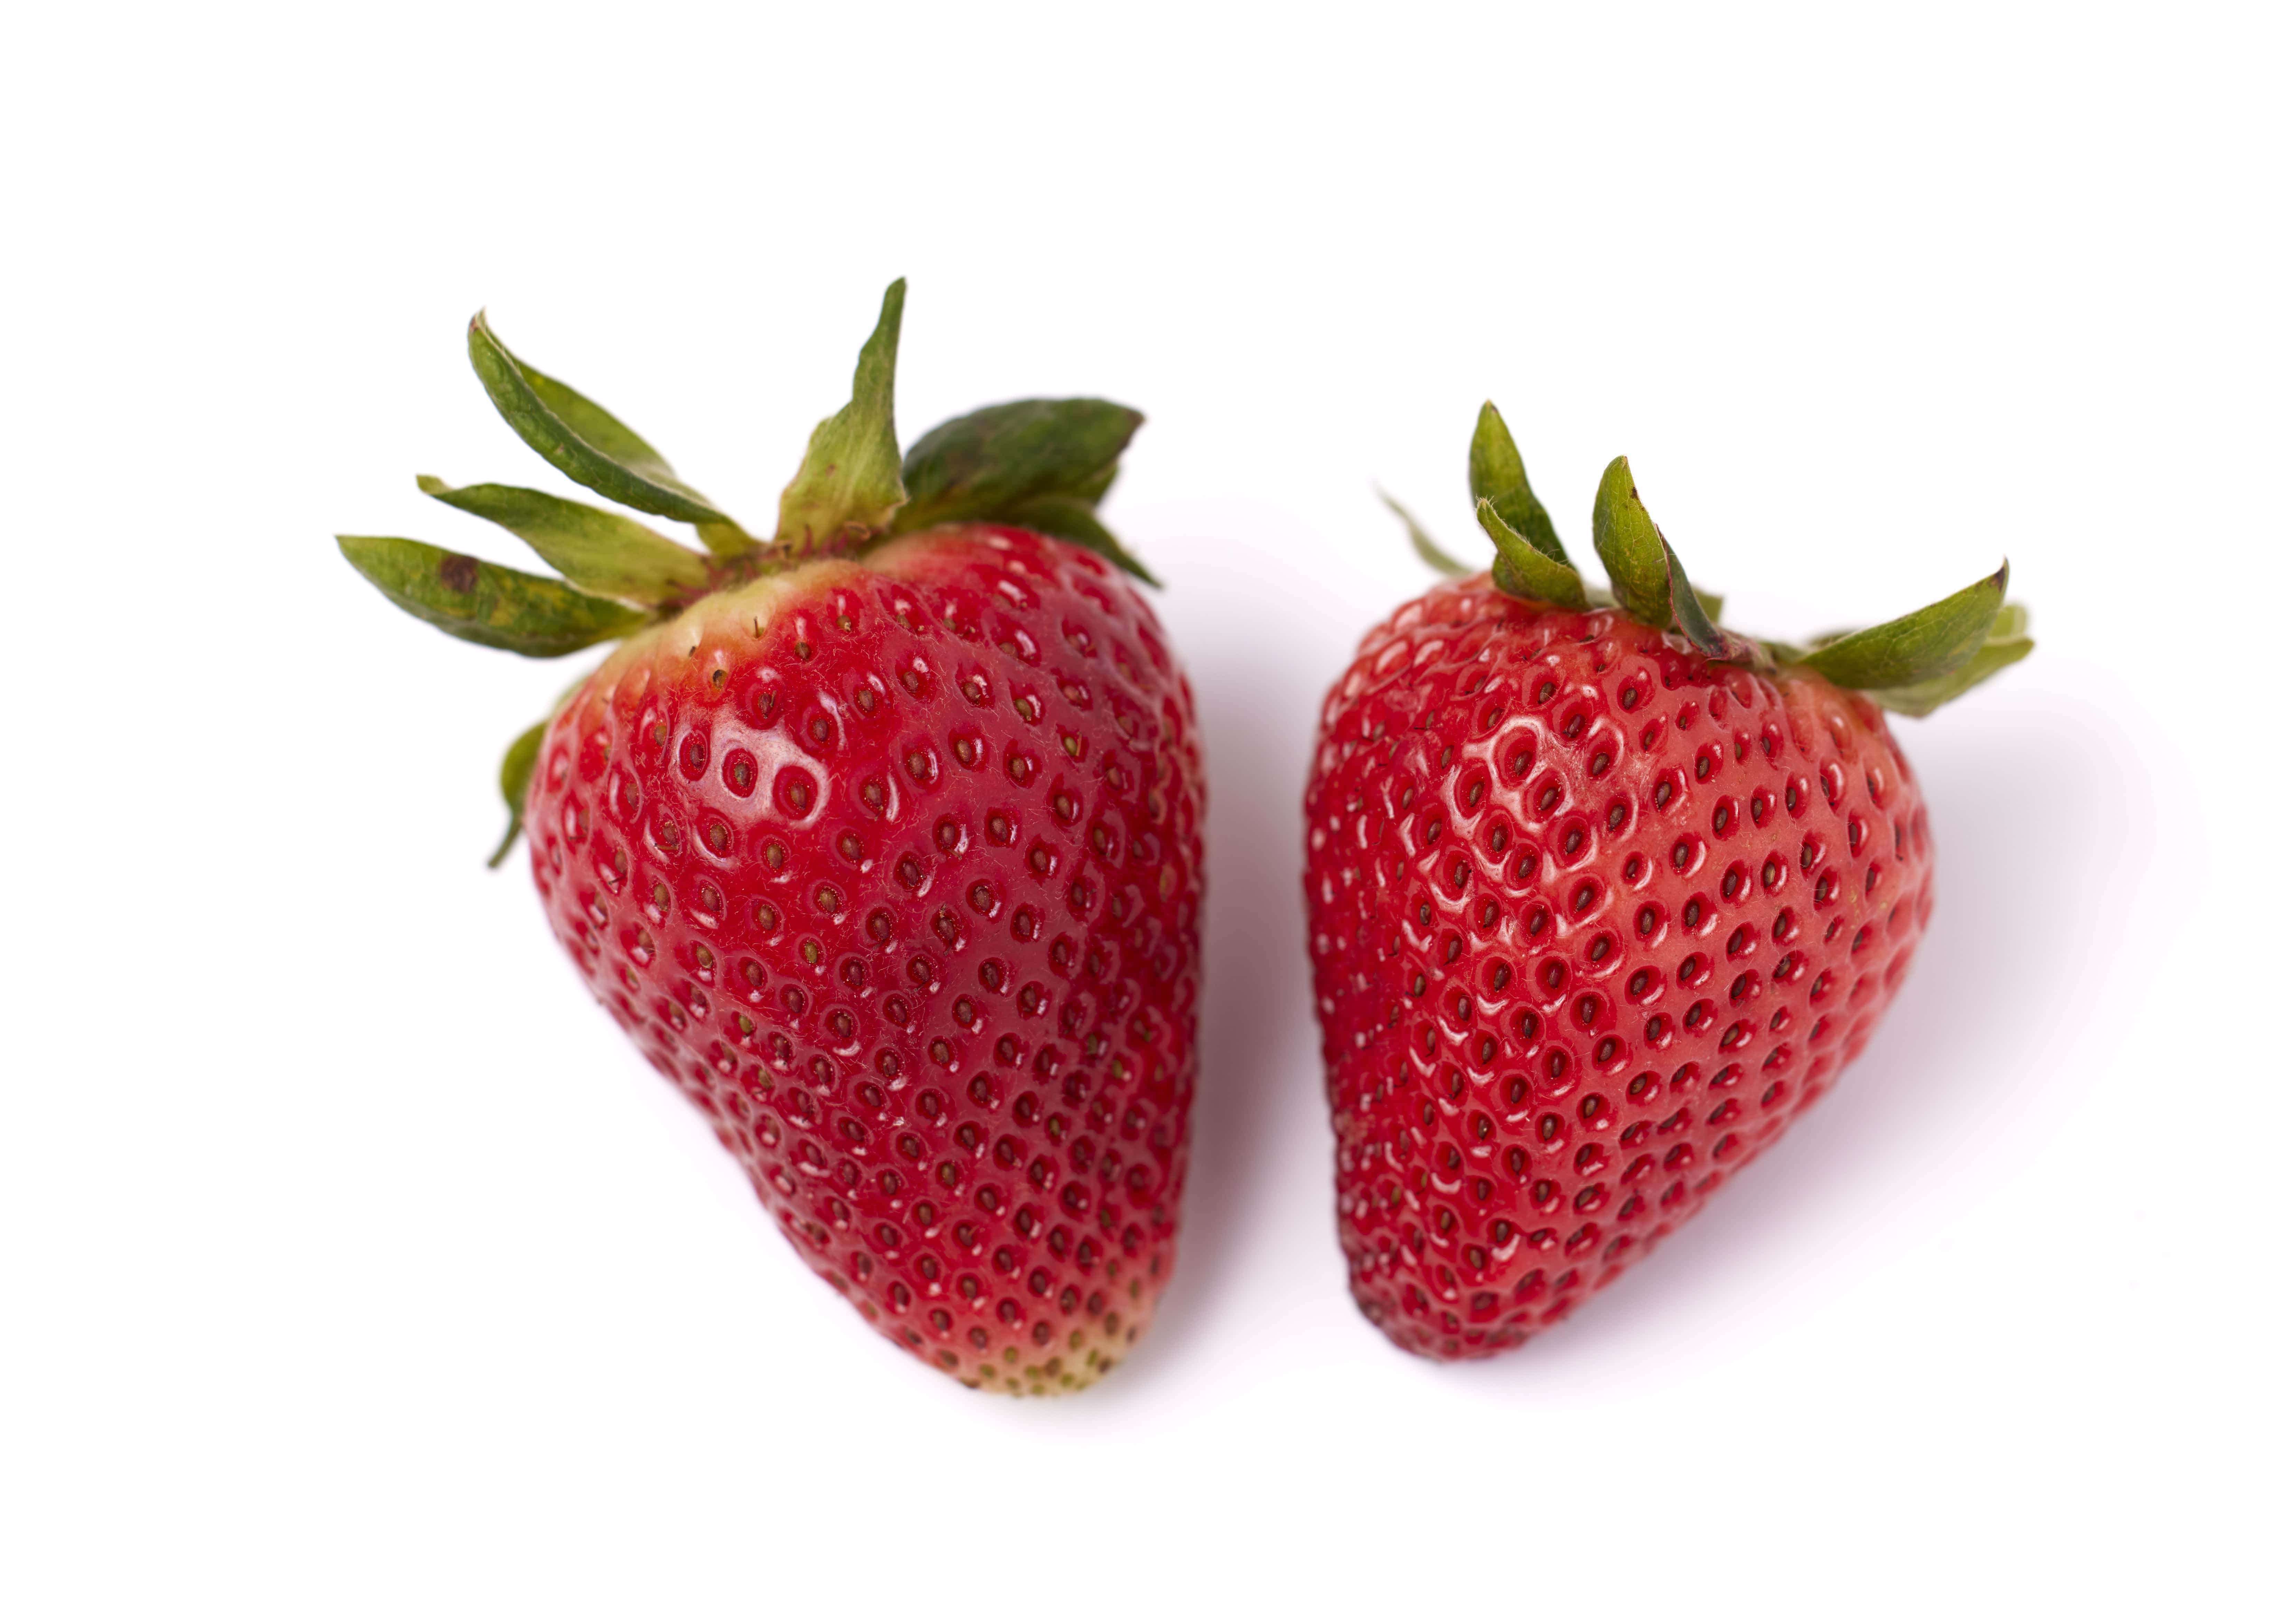 2 strawberries